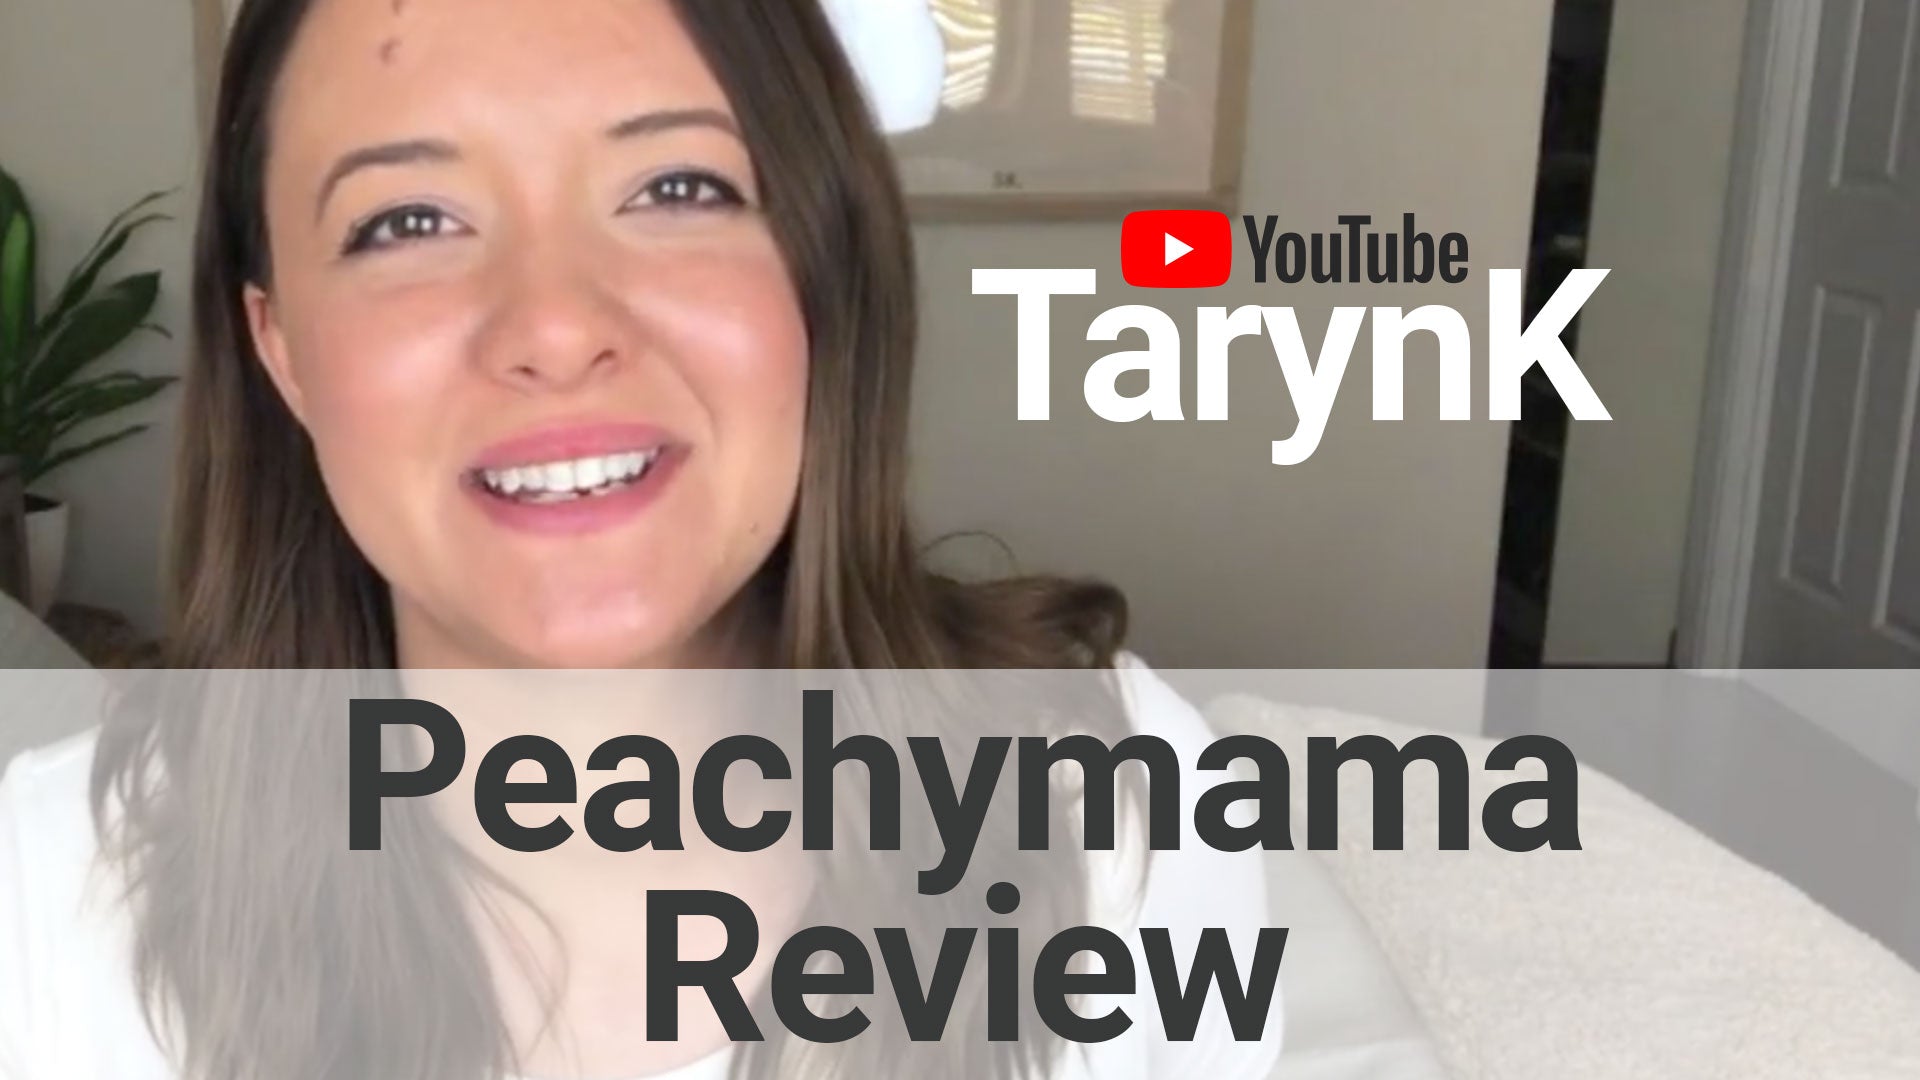 Peachymama Review By TarynK